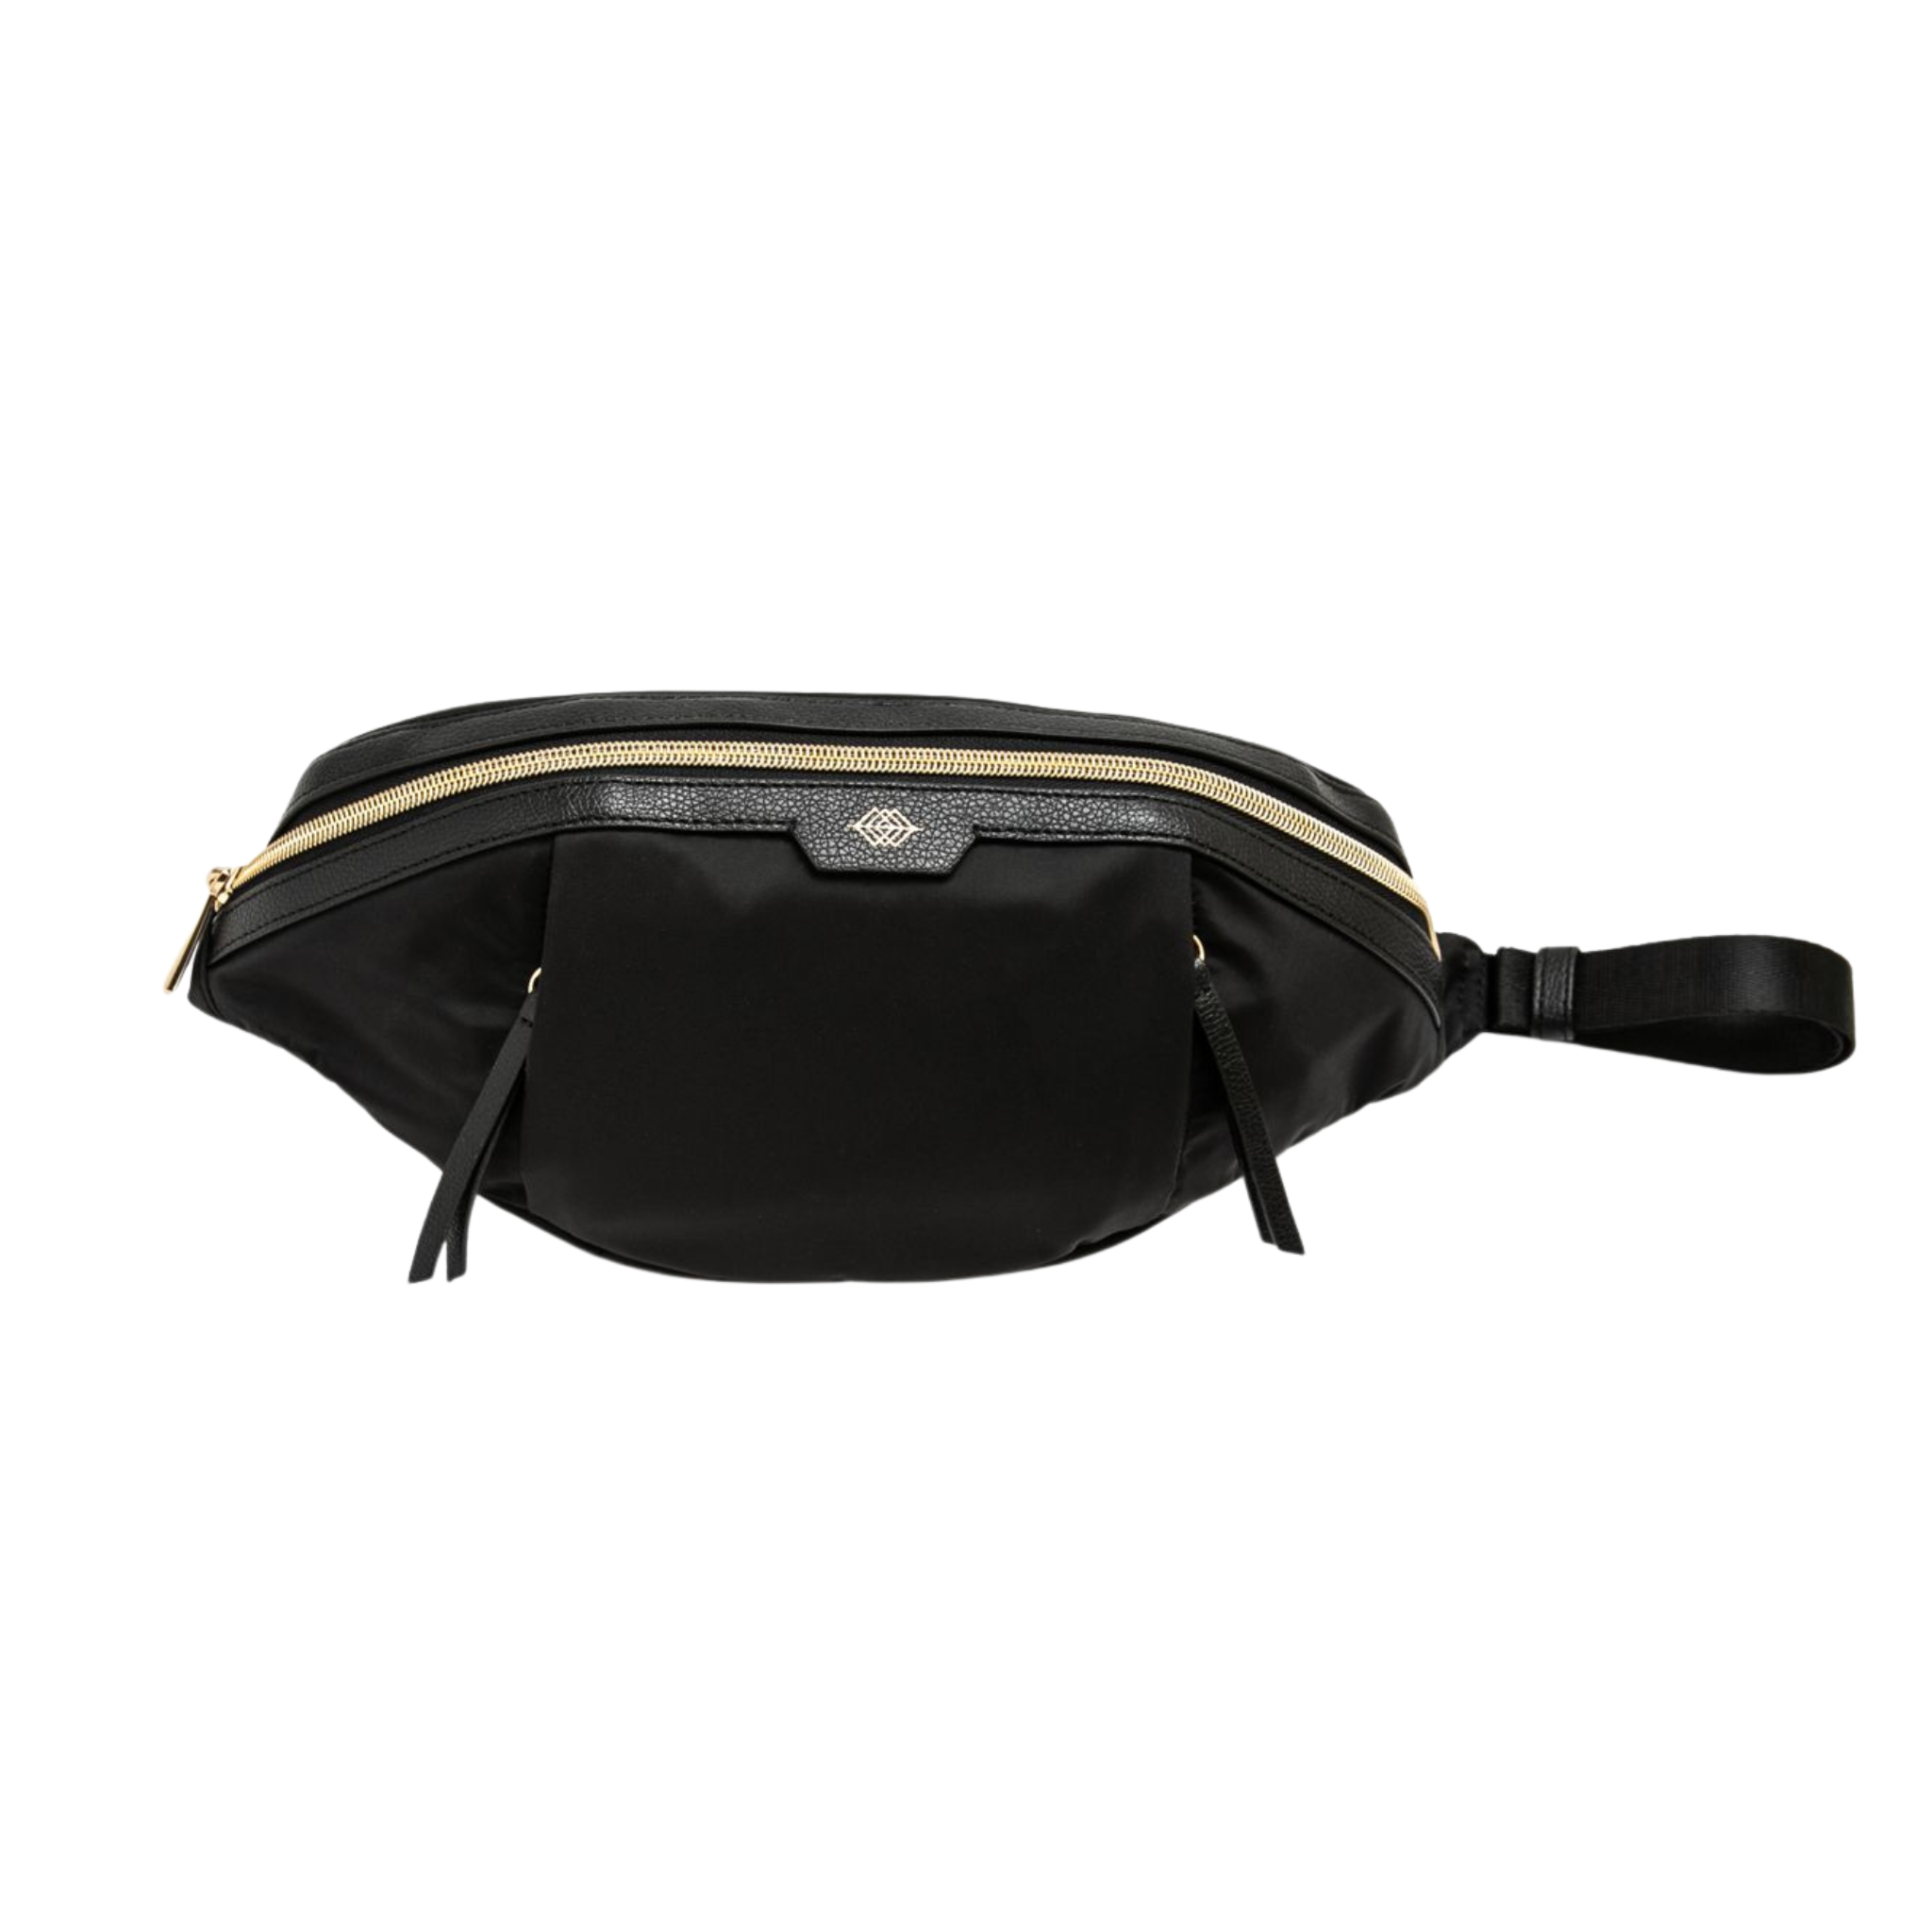 Supreme Fanny Pack Orange Black Adjustable Strap Clip Buckle Waist Bag